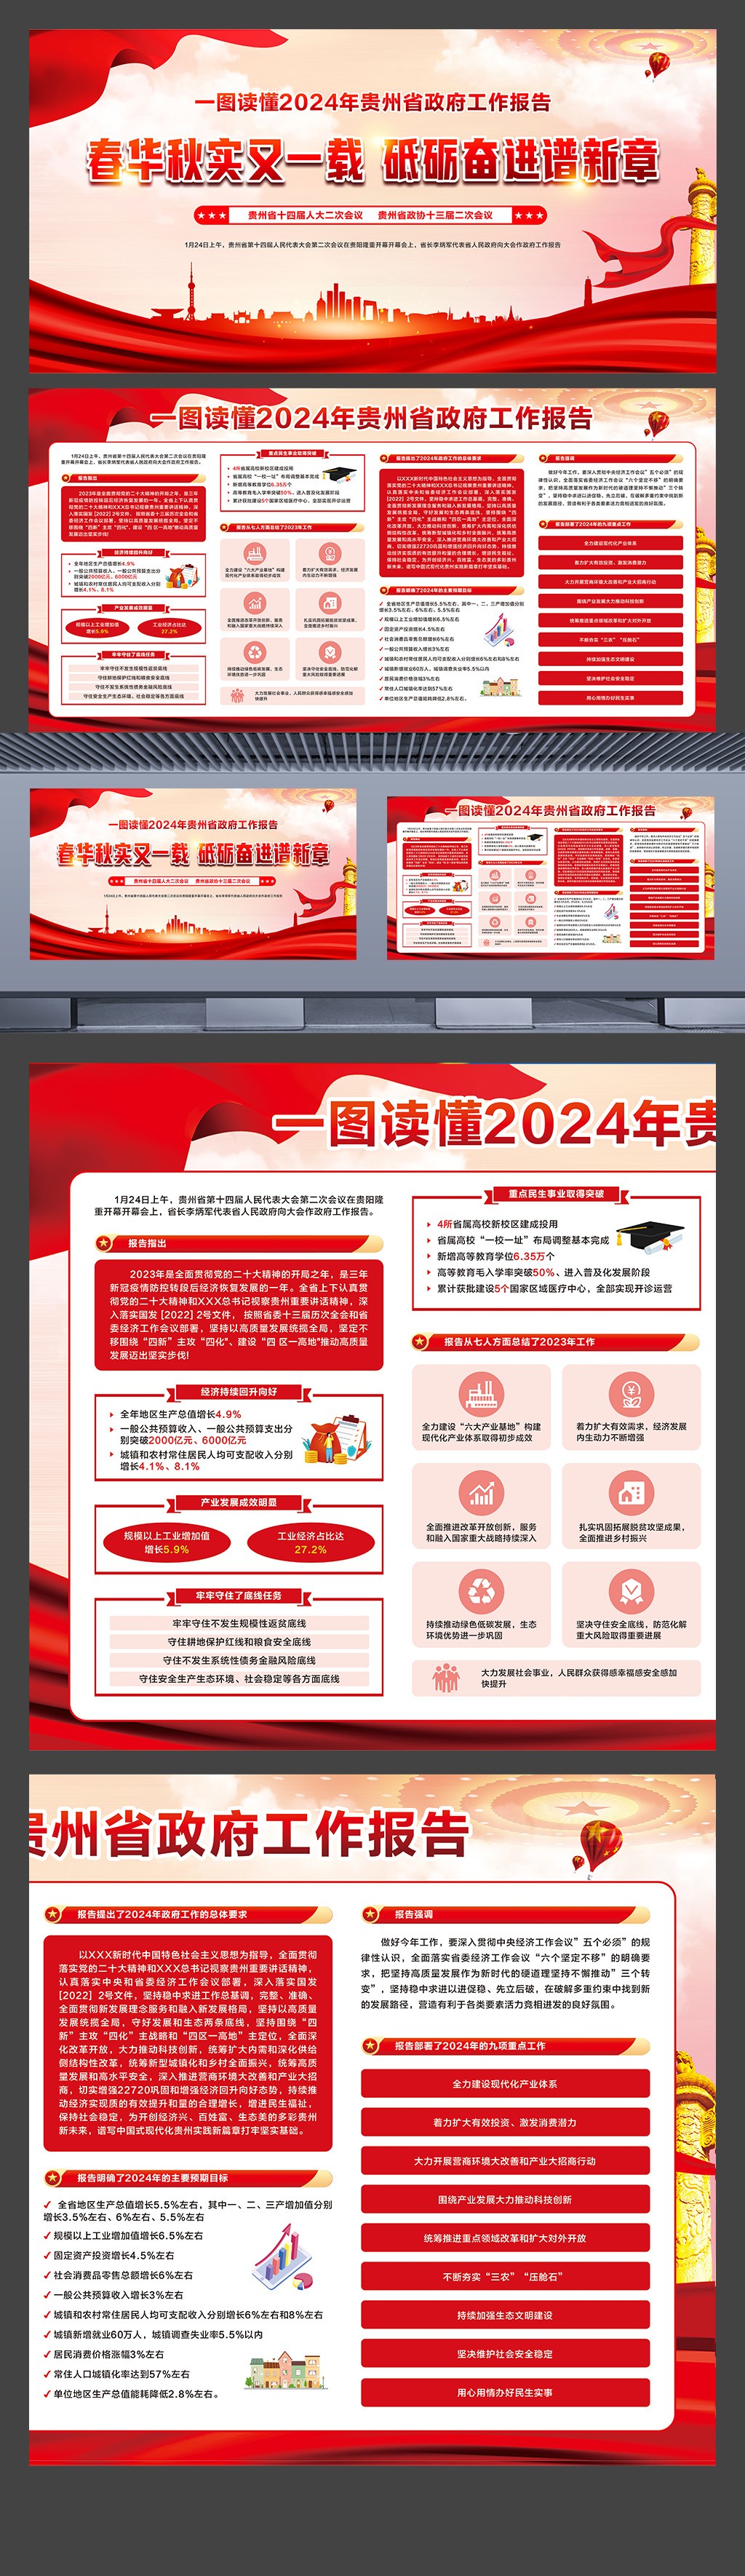 2024年贵州省两会精神政府工作报告学习横板展板素材